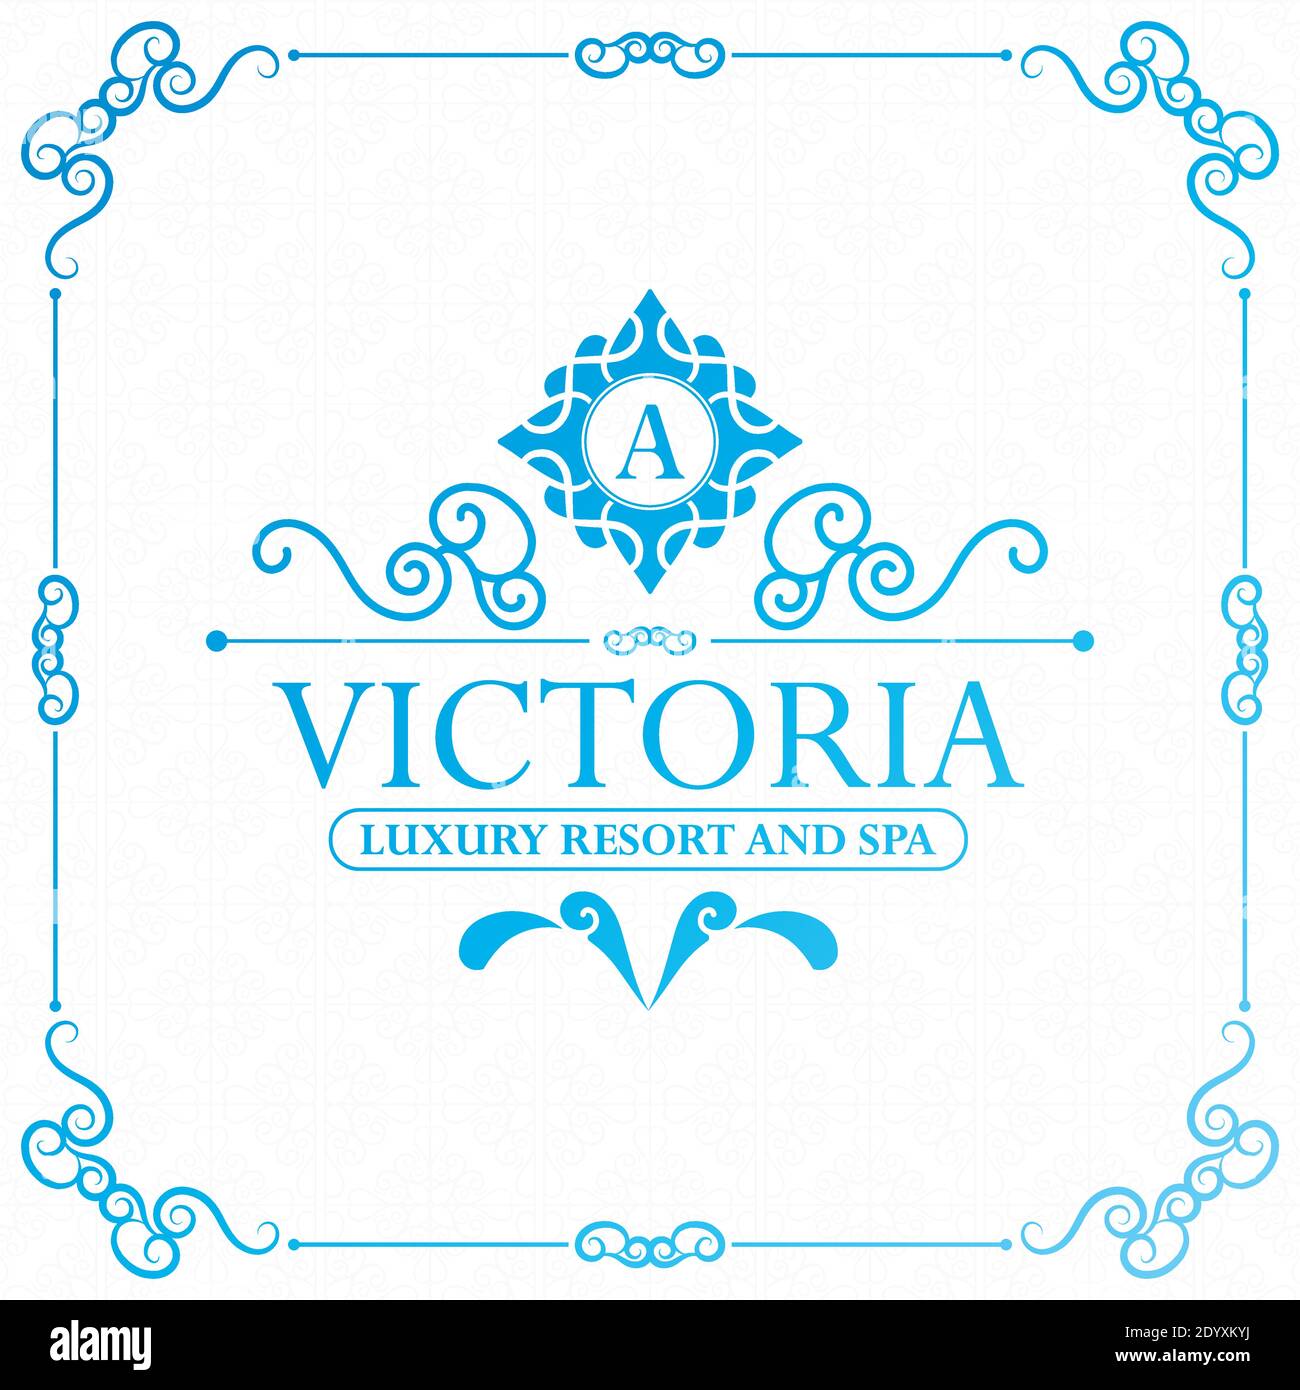 Modern hotel label template. Trendy vintage royal ornament frames illustration. Stock Vector